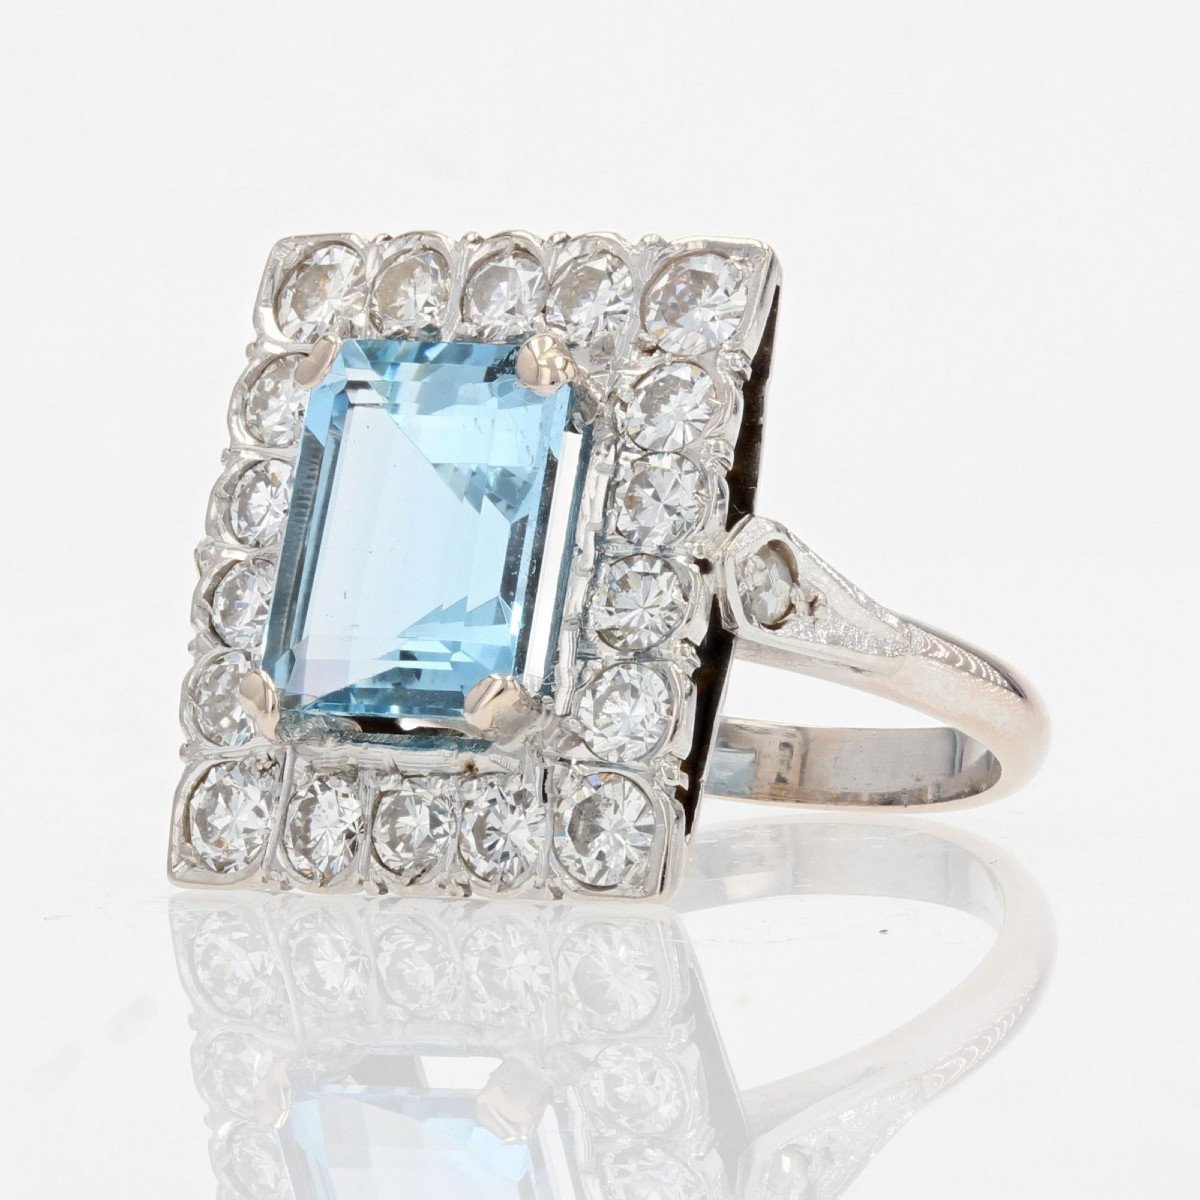 Proantic: Rectangular Aquamarine And Diamond Ring